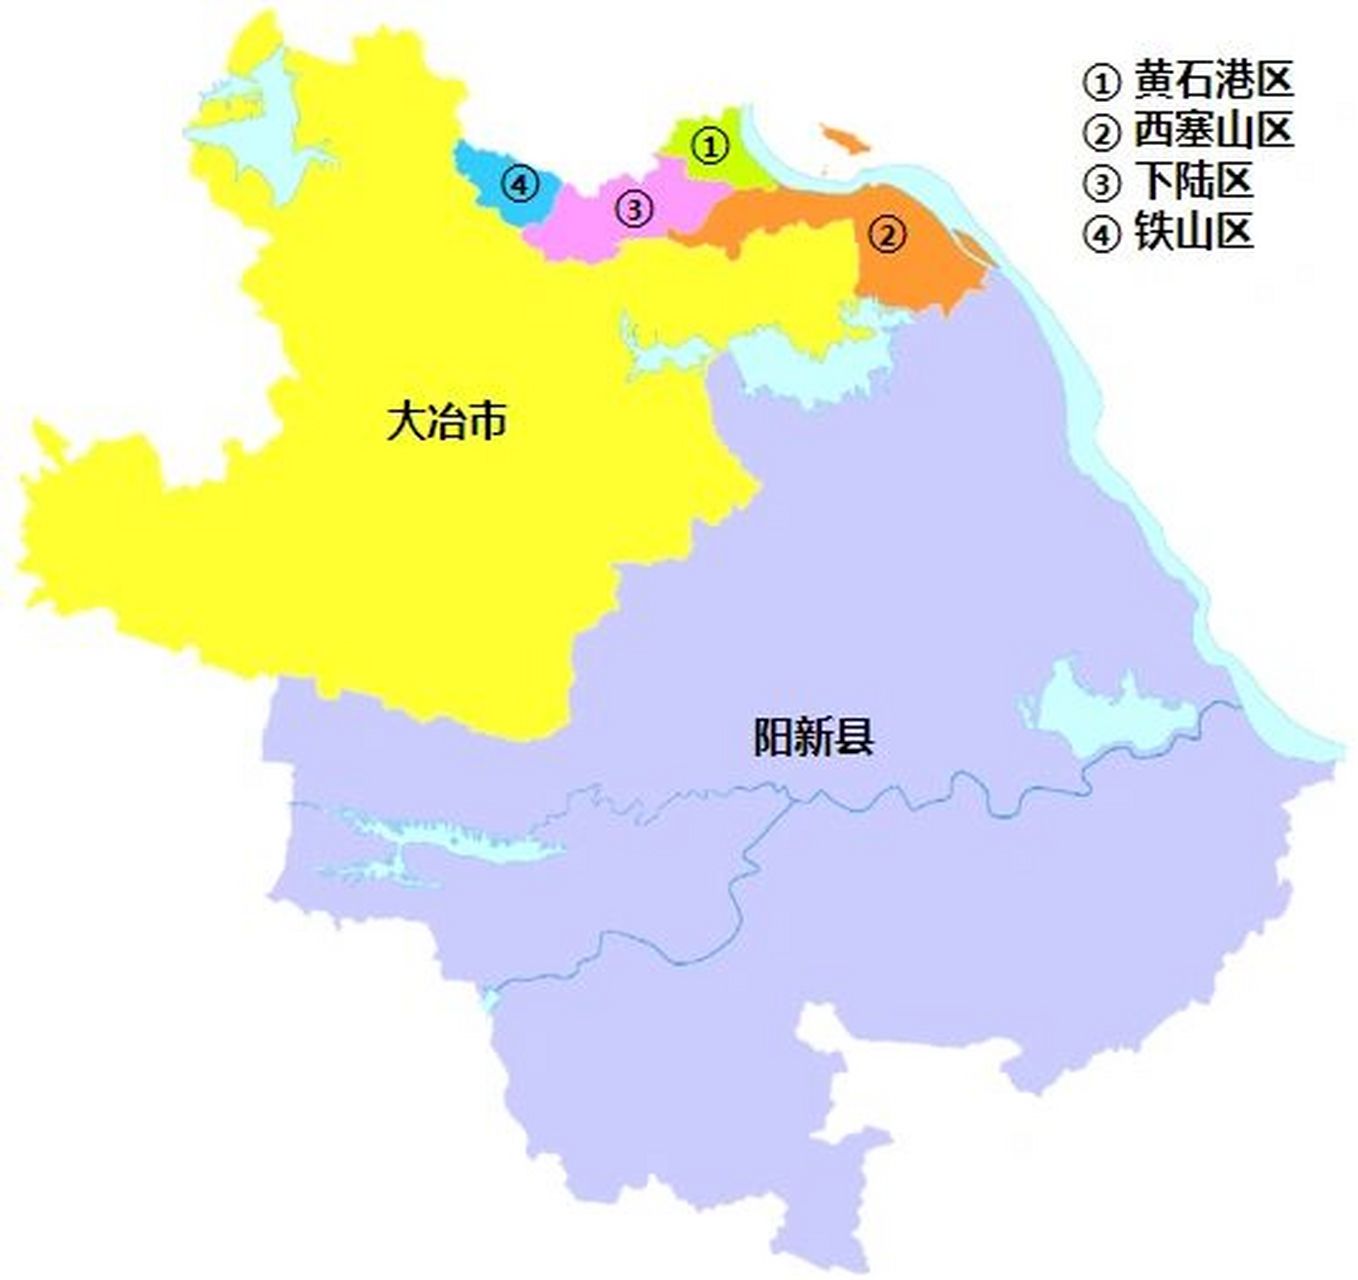 黄石行政区划 黄石市,湖北省辖地级市,总面积为4583平方公里,常住人口